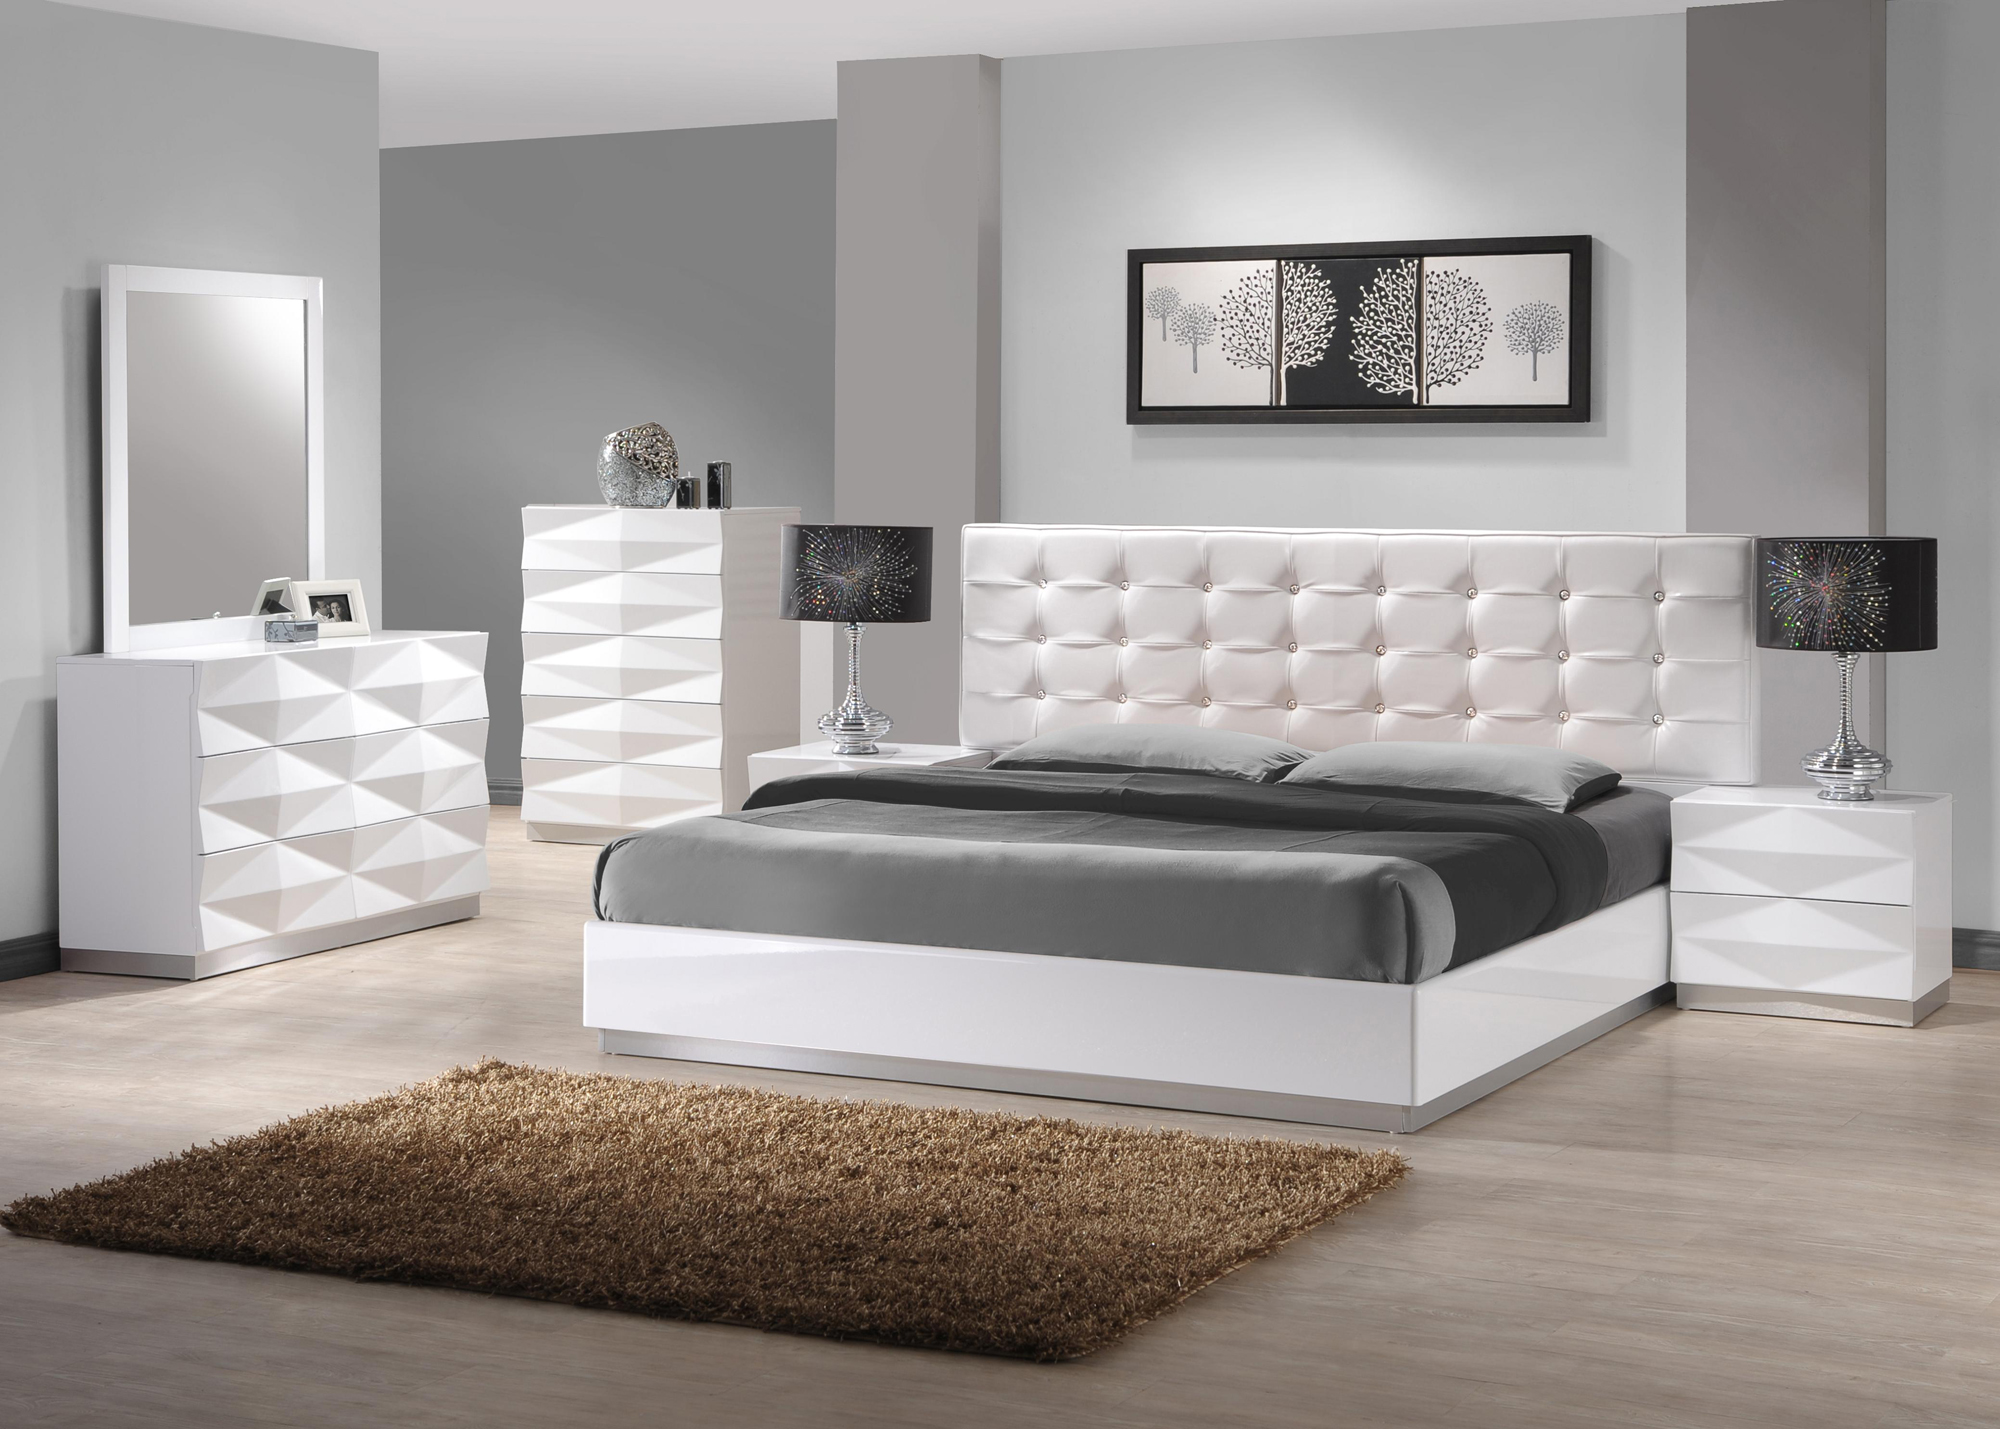 Trending High Gloss White Bedroom Furniture Sets Best Ideas 2017 white gloss bedroom furniture sets